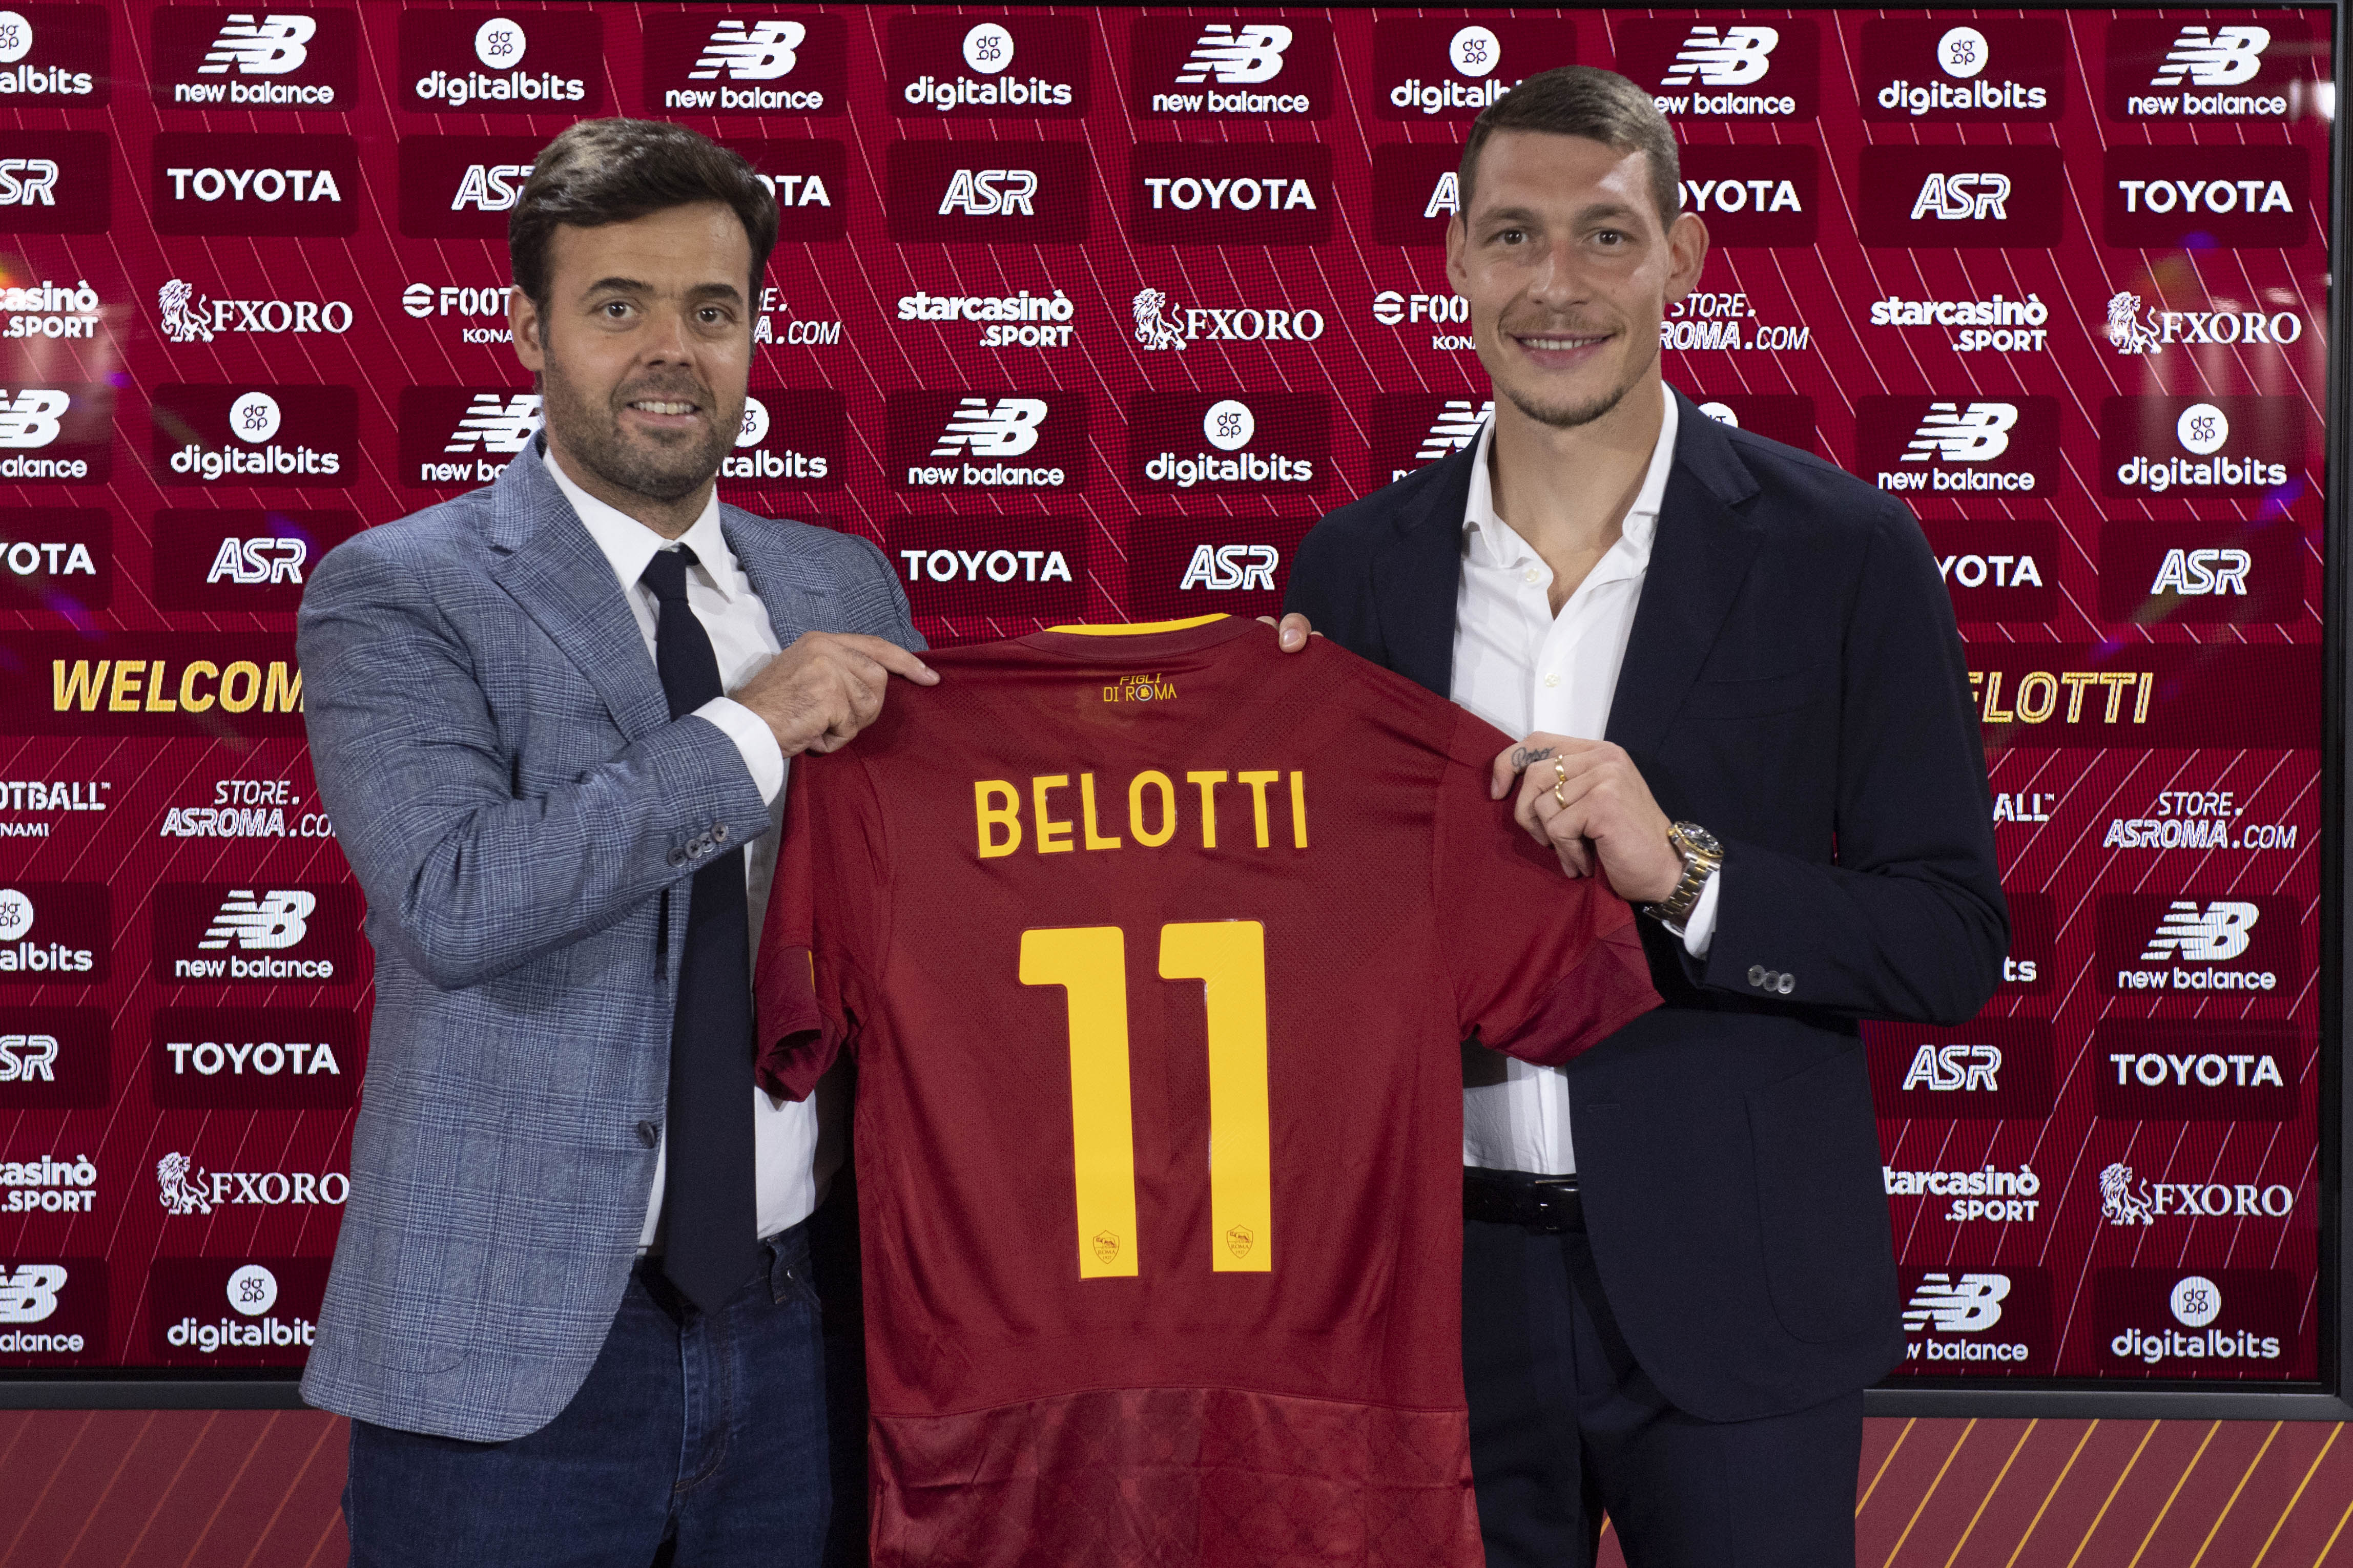 Tiago Pinto e Belotti con la maglia del nuovo numero 11